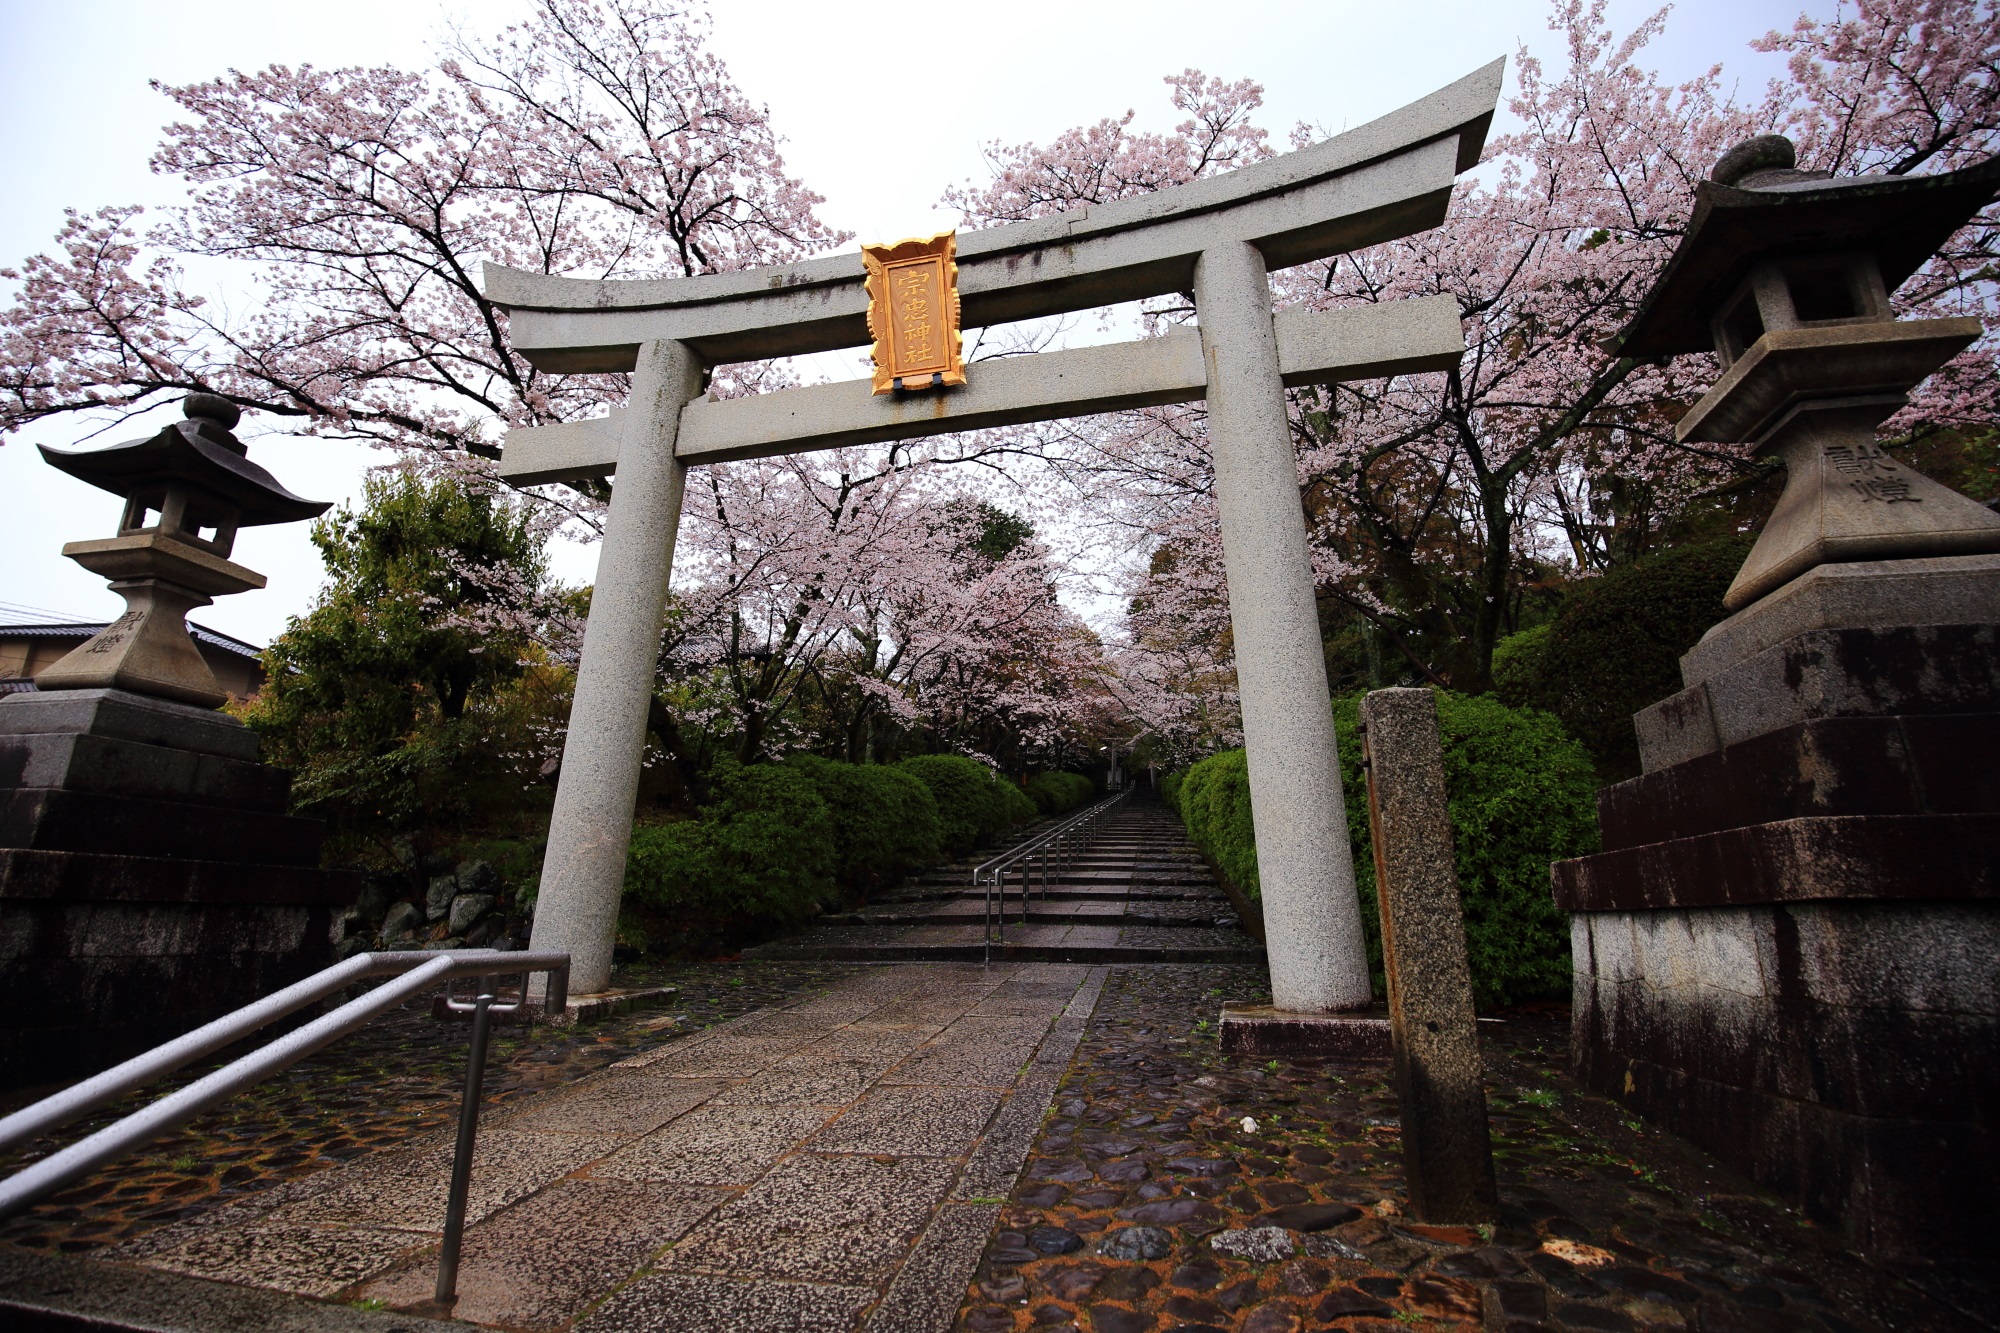 京都の桜の隠れた名所の宗忠神社の石段と鳥居の桜